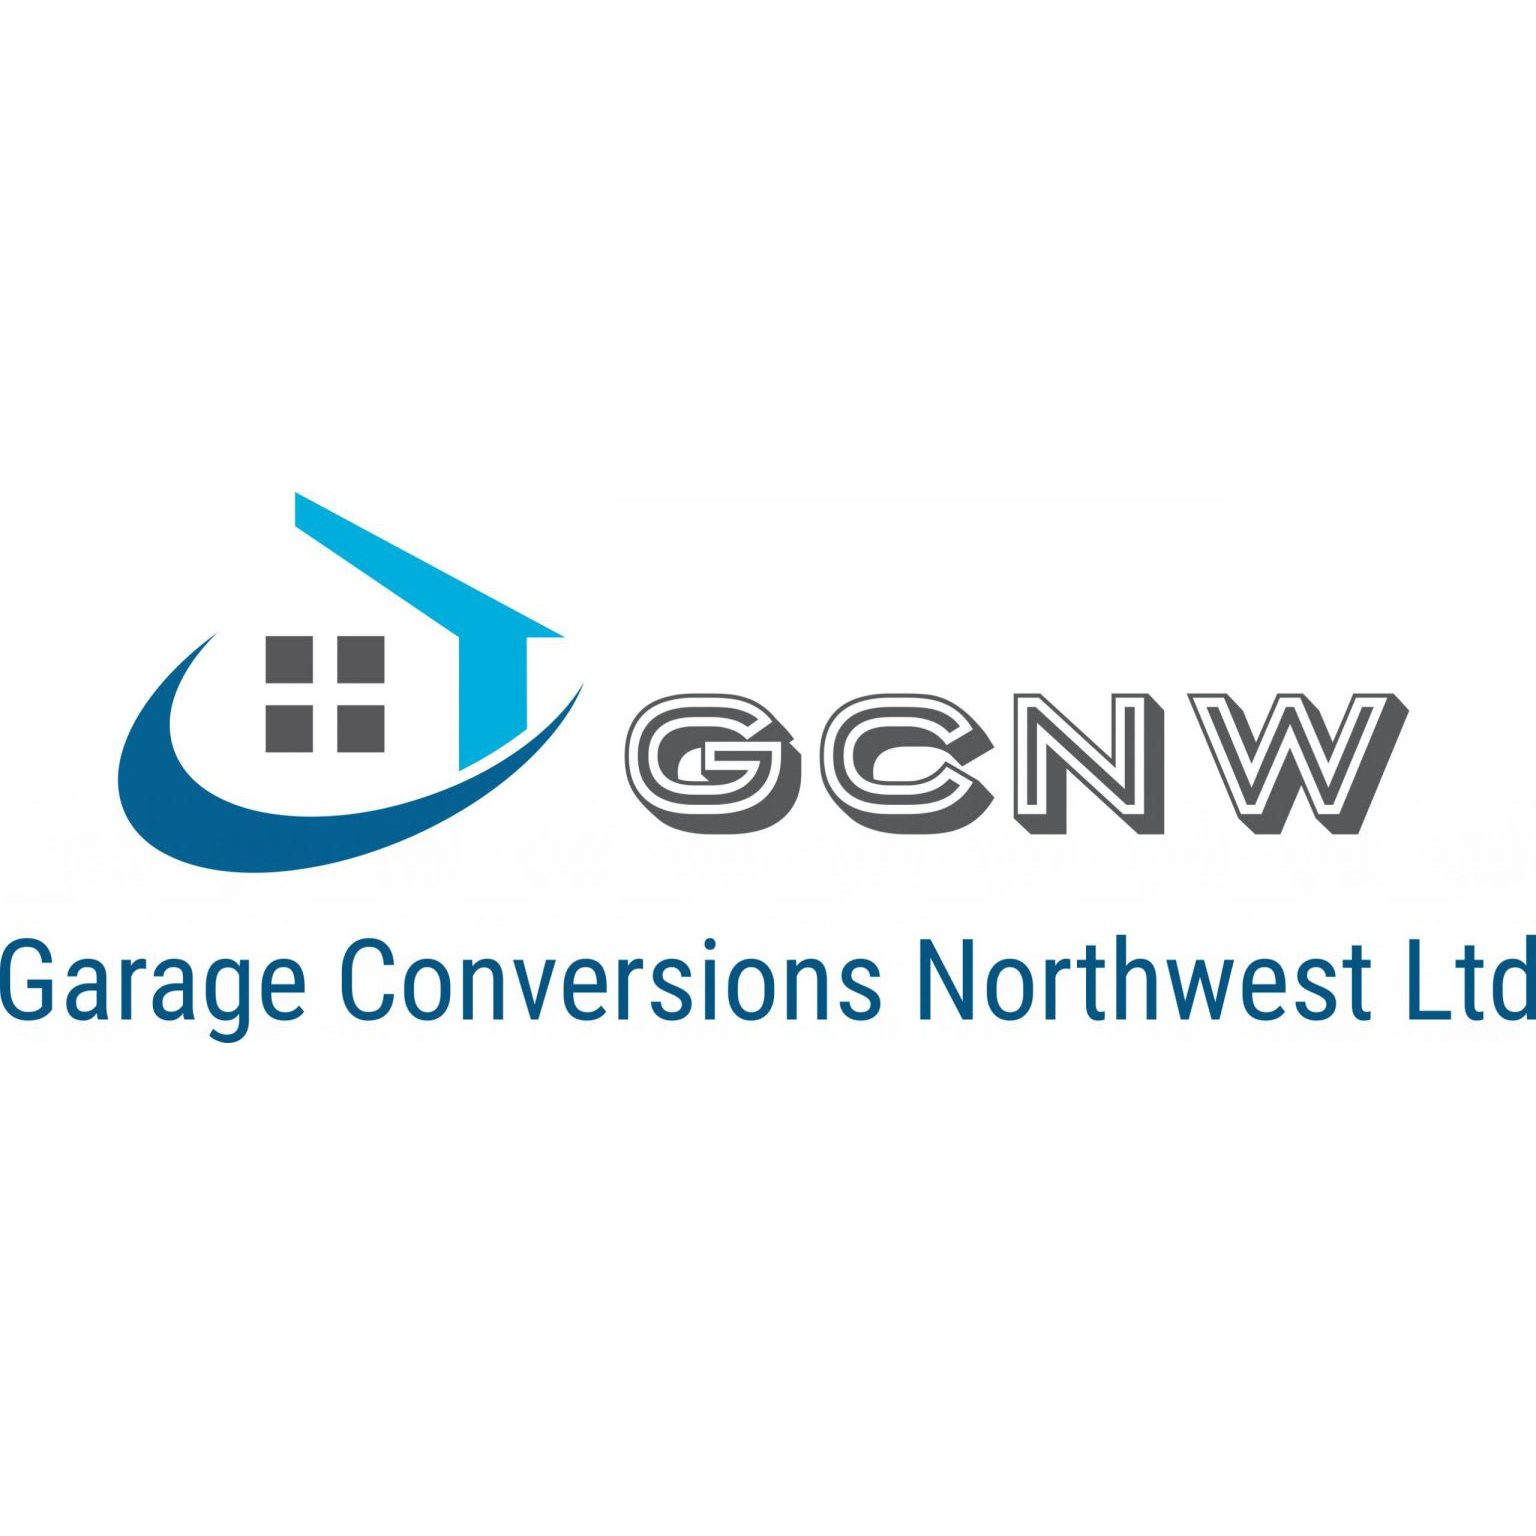 Garage Conversions Northwest Ltd - Manchester, Lancashire M26 1DP - 01614 599928 | ShowMeLocal.com